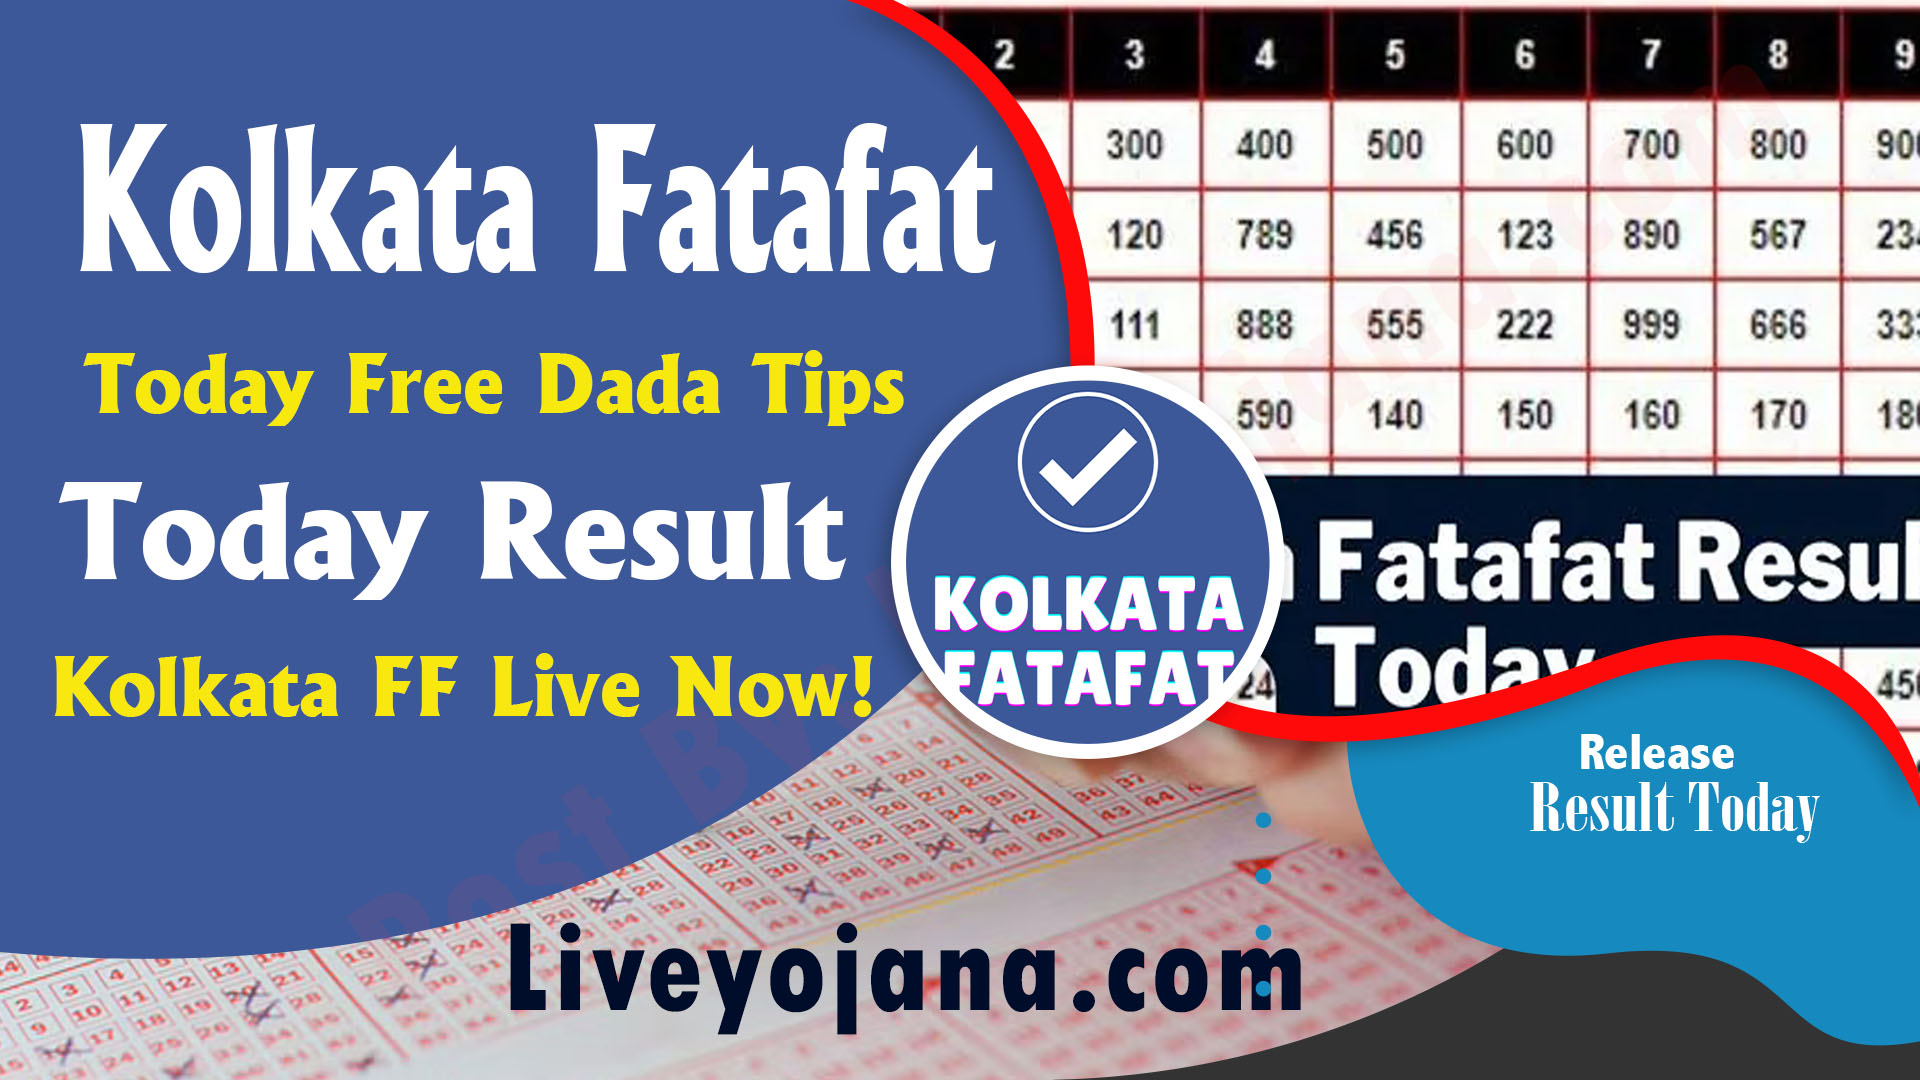 Kolkata Fatafat Today Result Kolkata FF Old Results Today Free Dada Tips